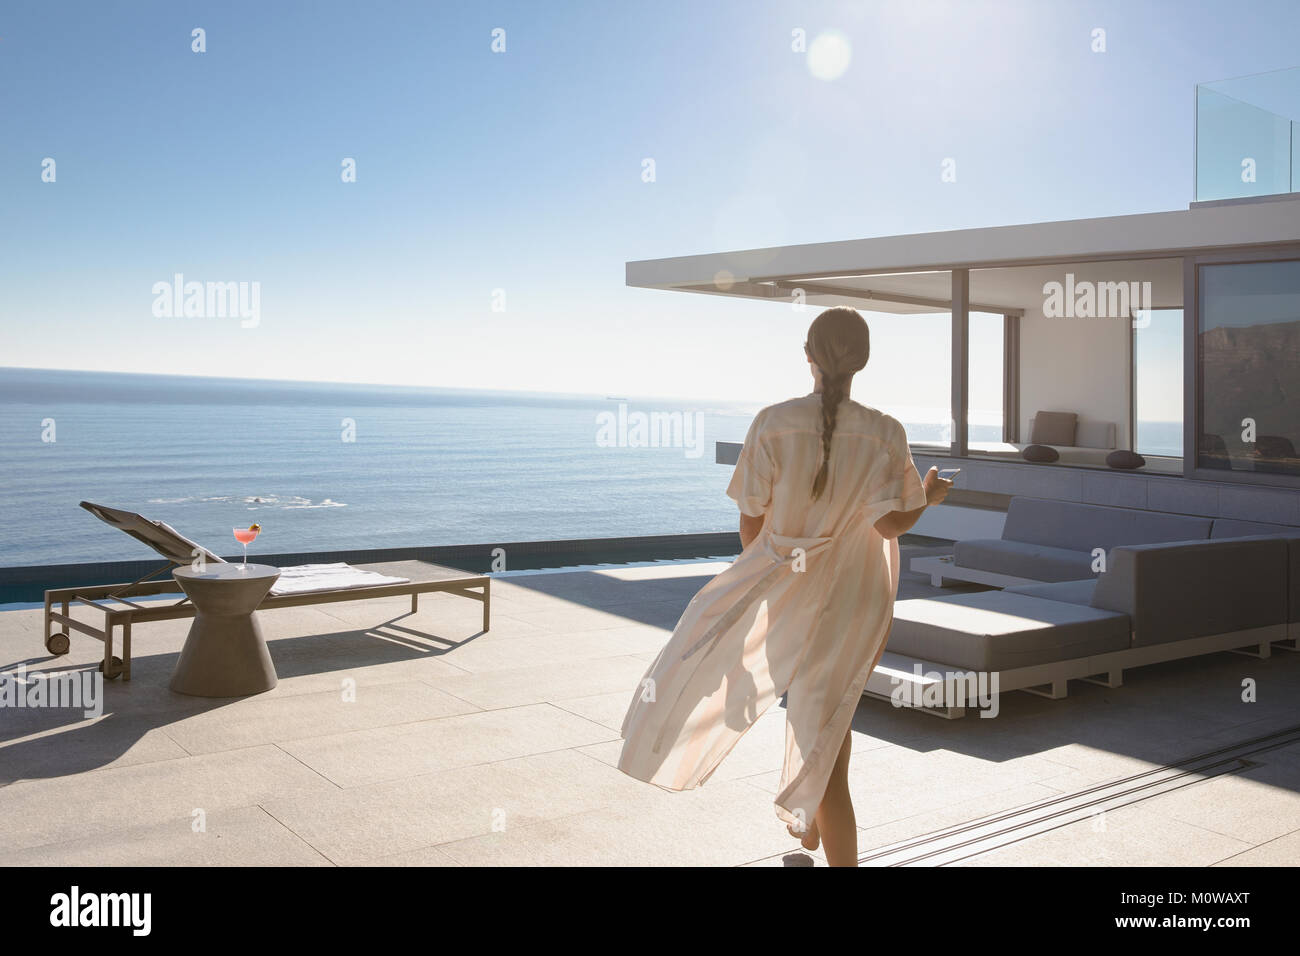 Frau gehen auf sonnige moderne und luxuriöse Home Showcase äußere Terrasse mit Meerblick Stockfoto